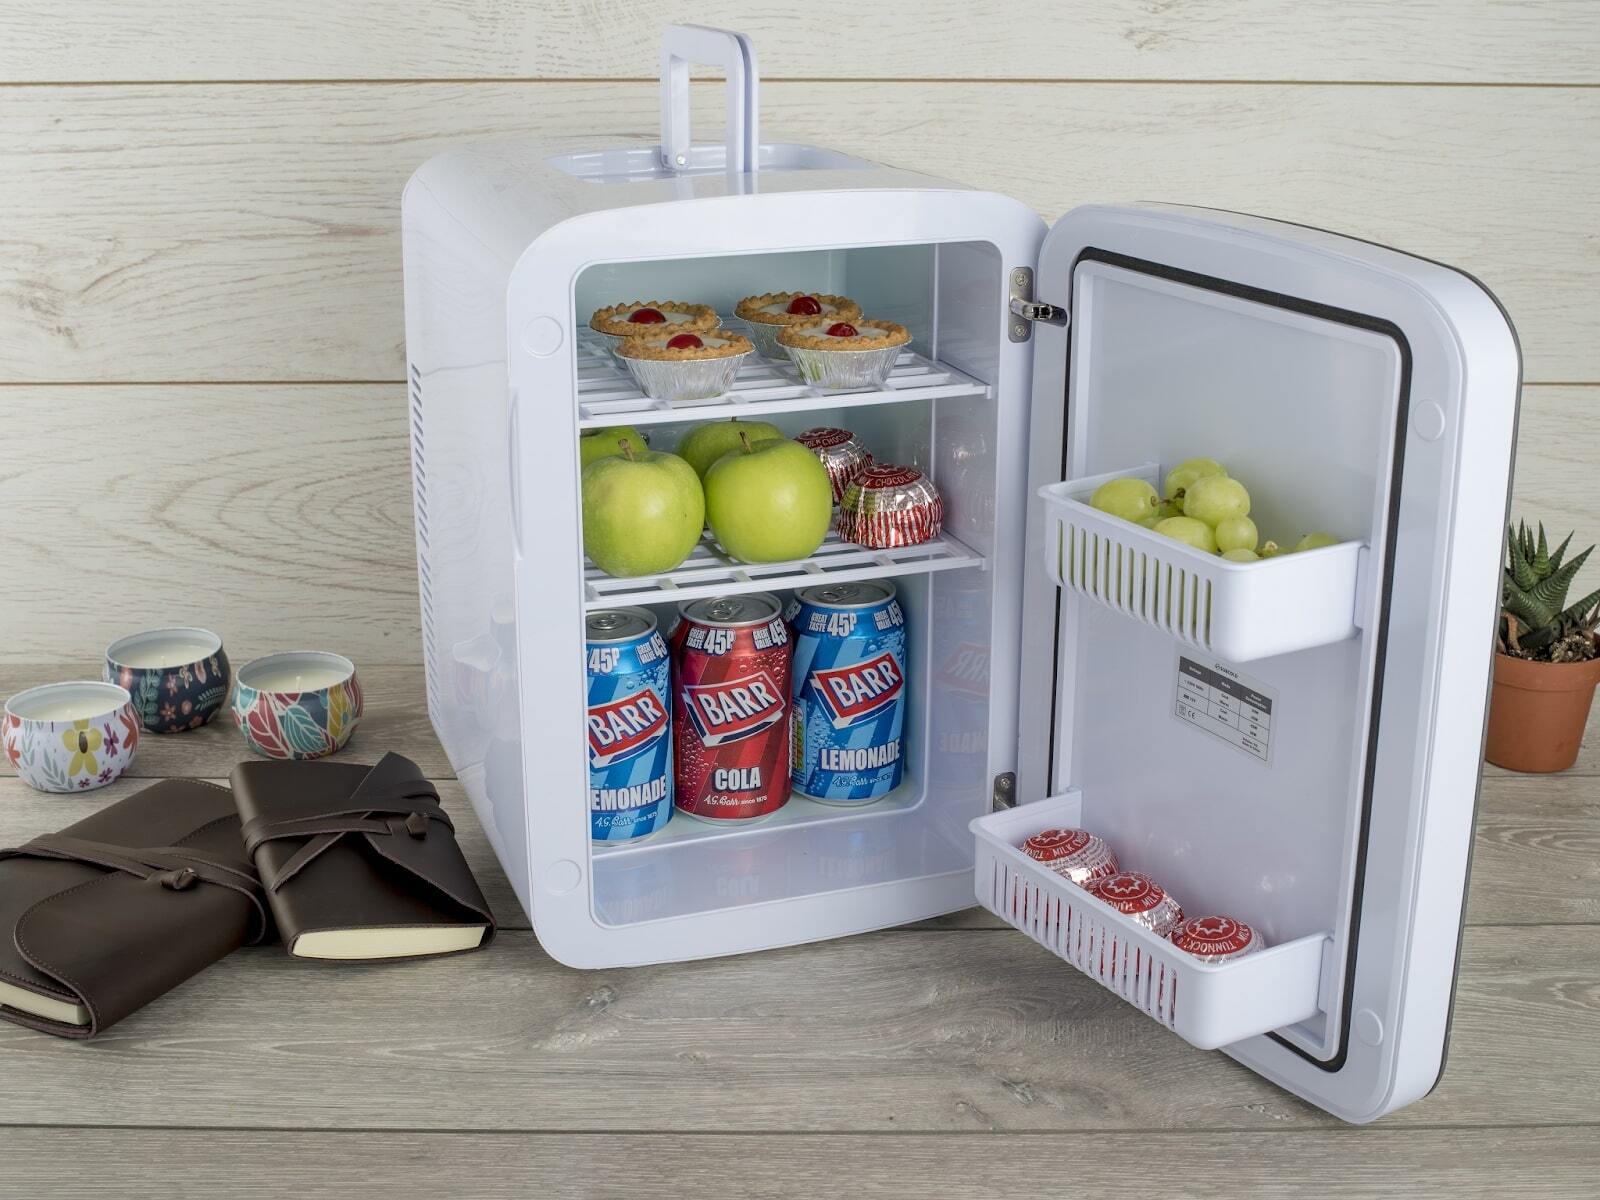 Khi mua tủ lạnh thanh lý bạn cần chú ý gì?